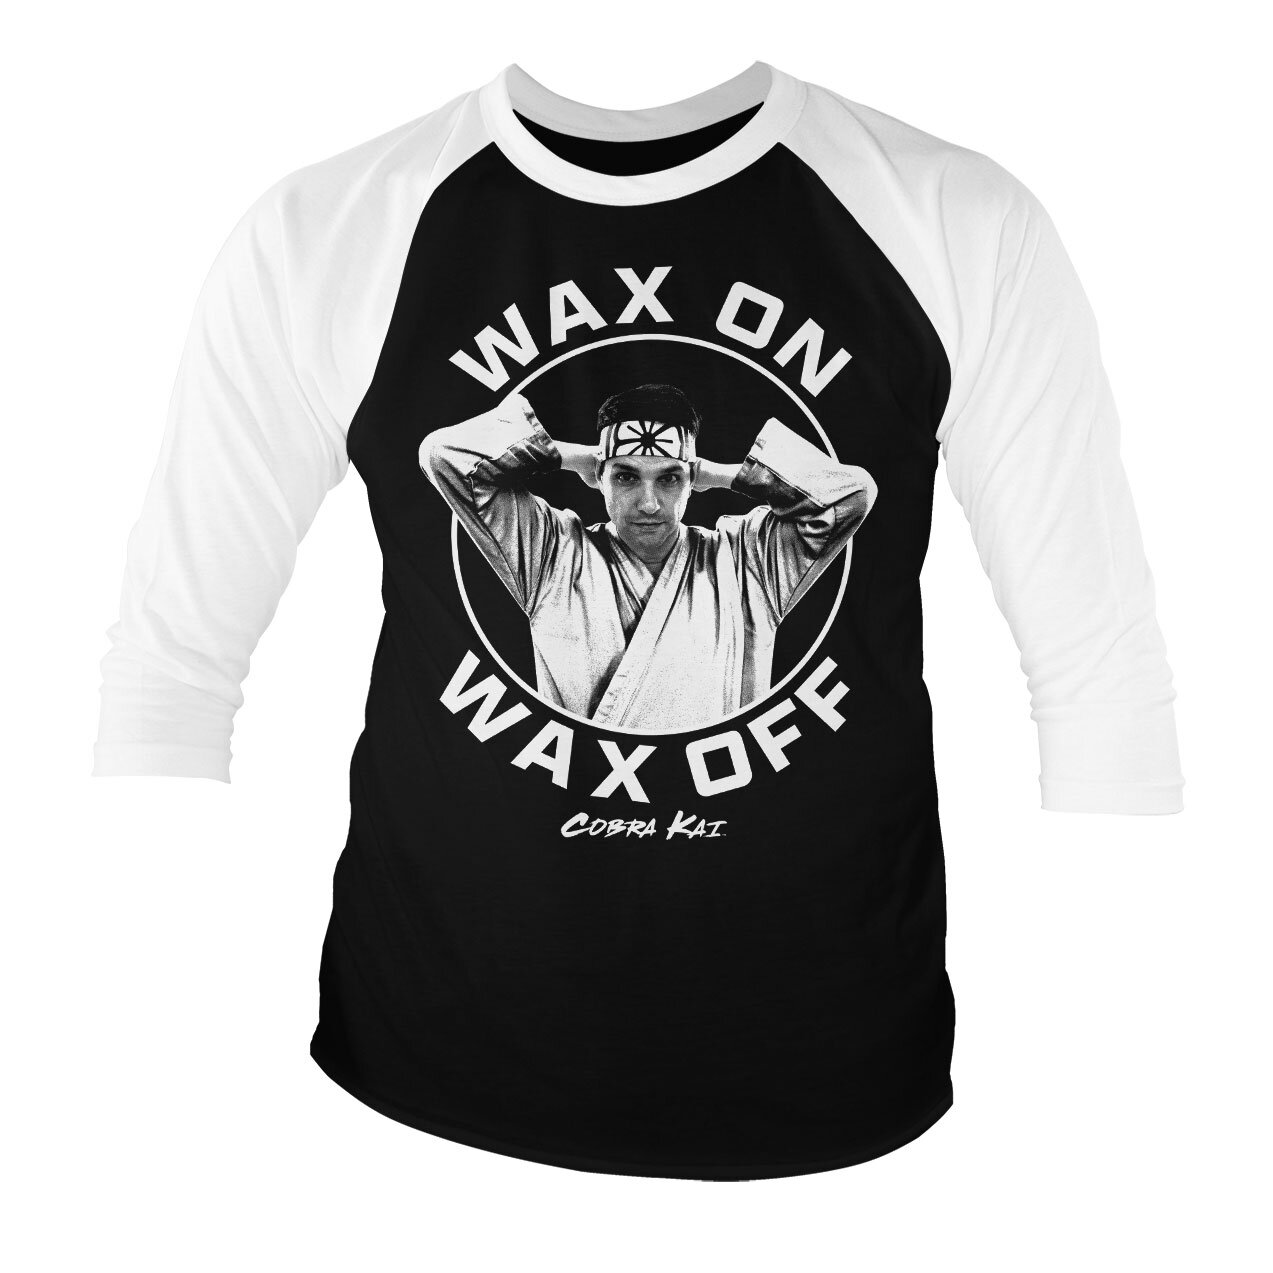 Wax On Wax Off Baseball 3/4 Sleeve Tee